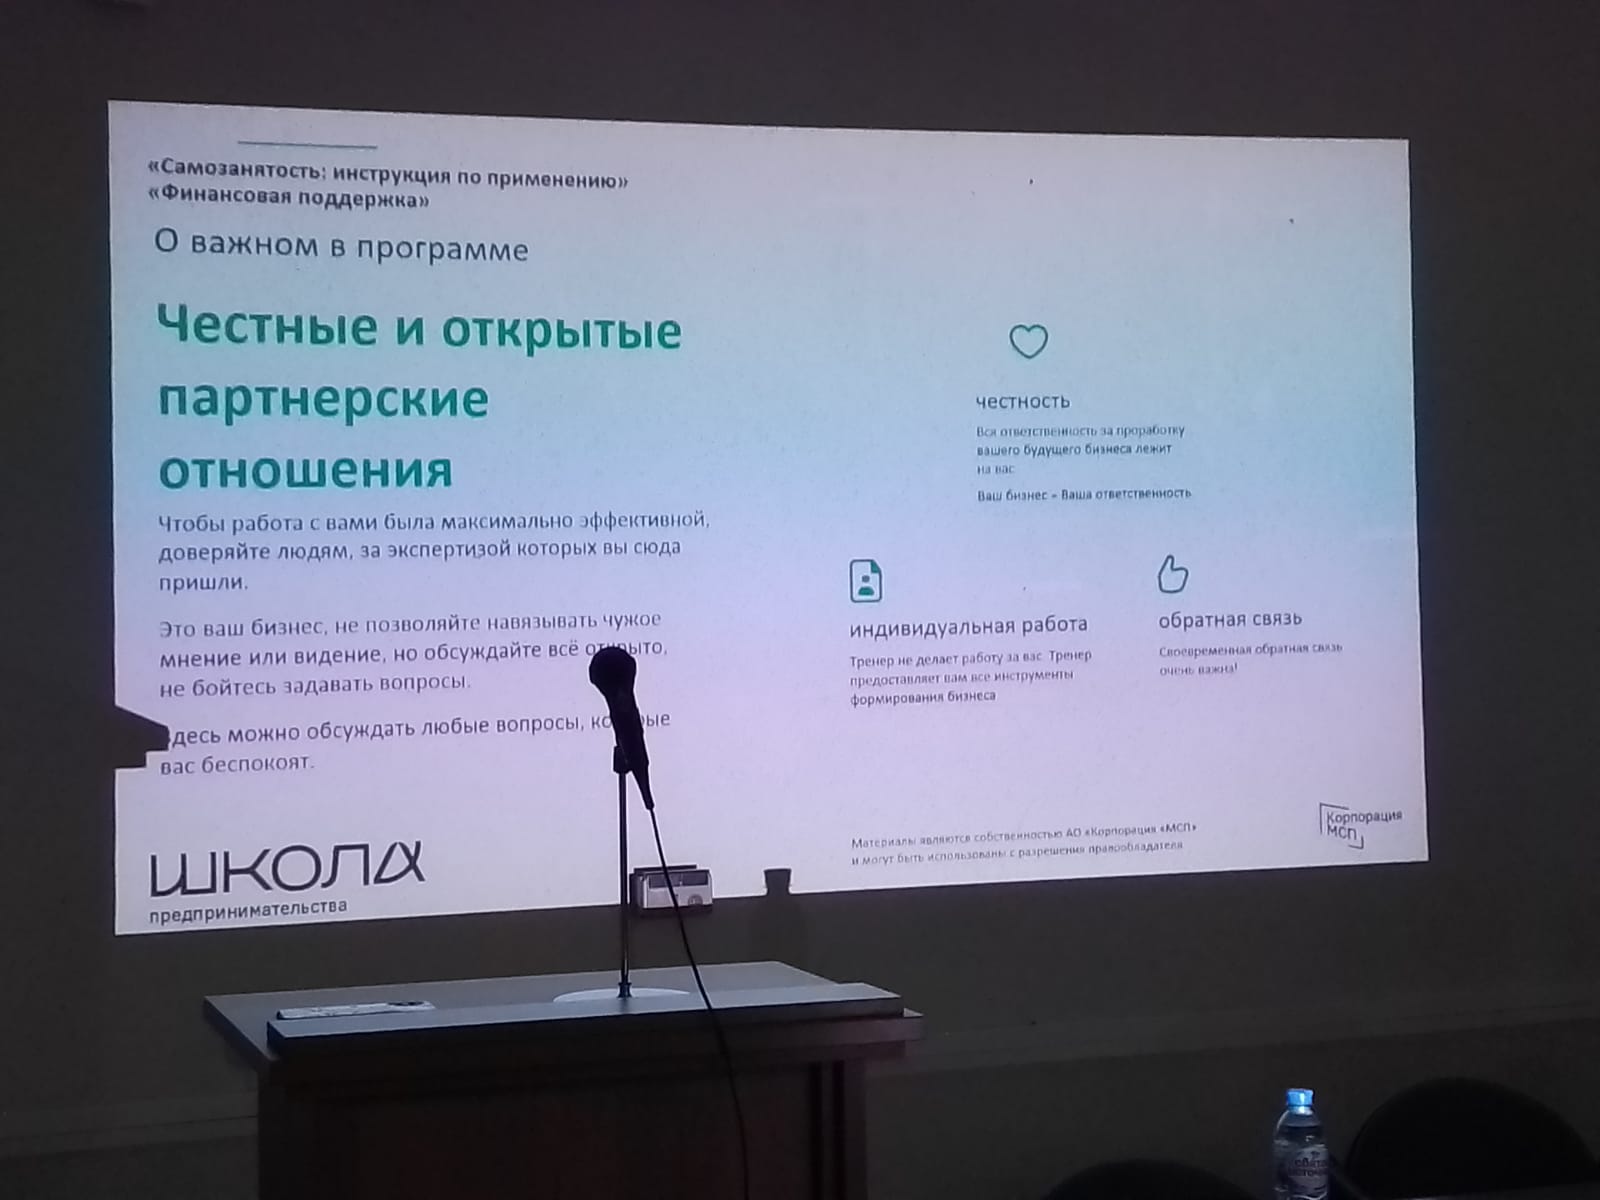 24.11.2022 г. был проведен тренинг «Финансовая поддержка» на базе Центра занятости населения г. Волжского